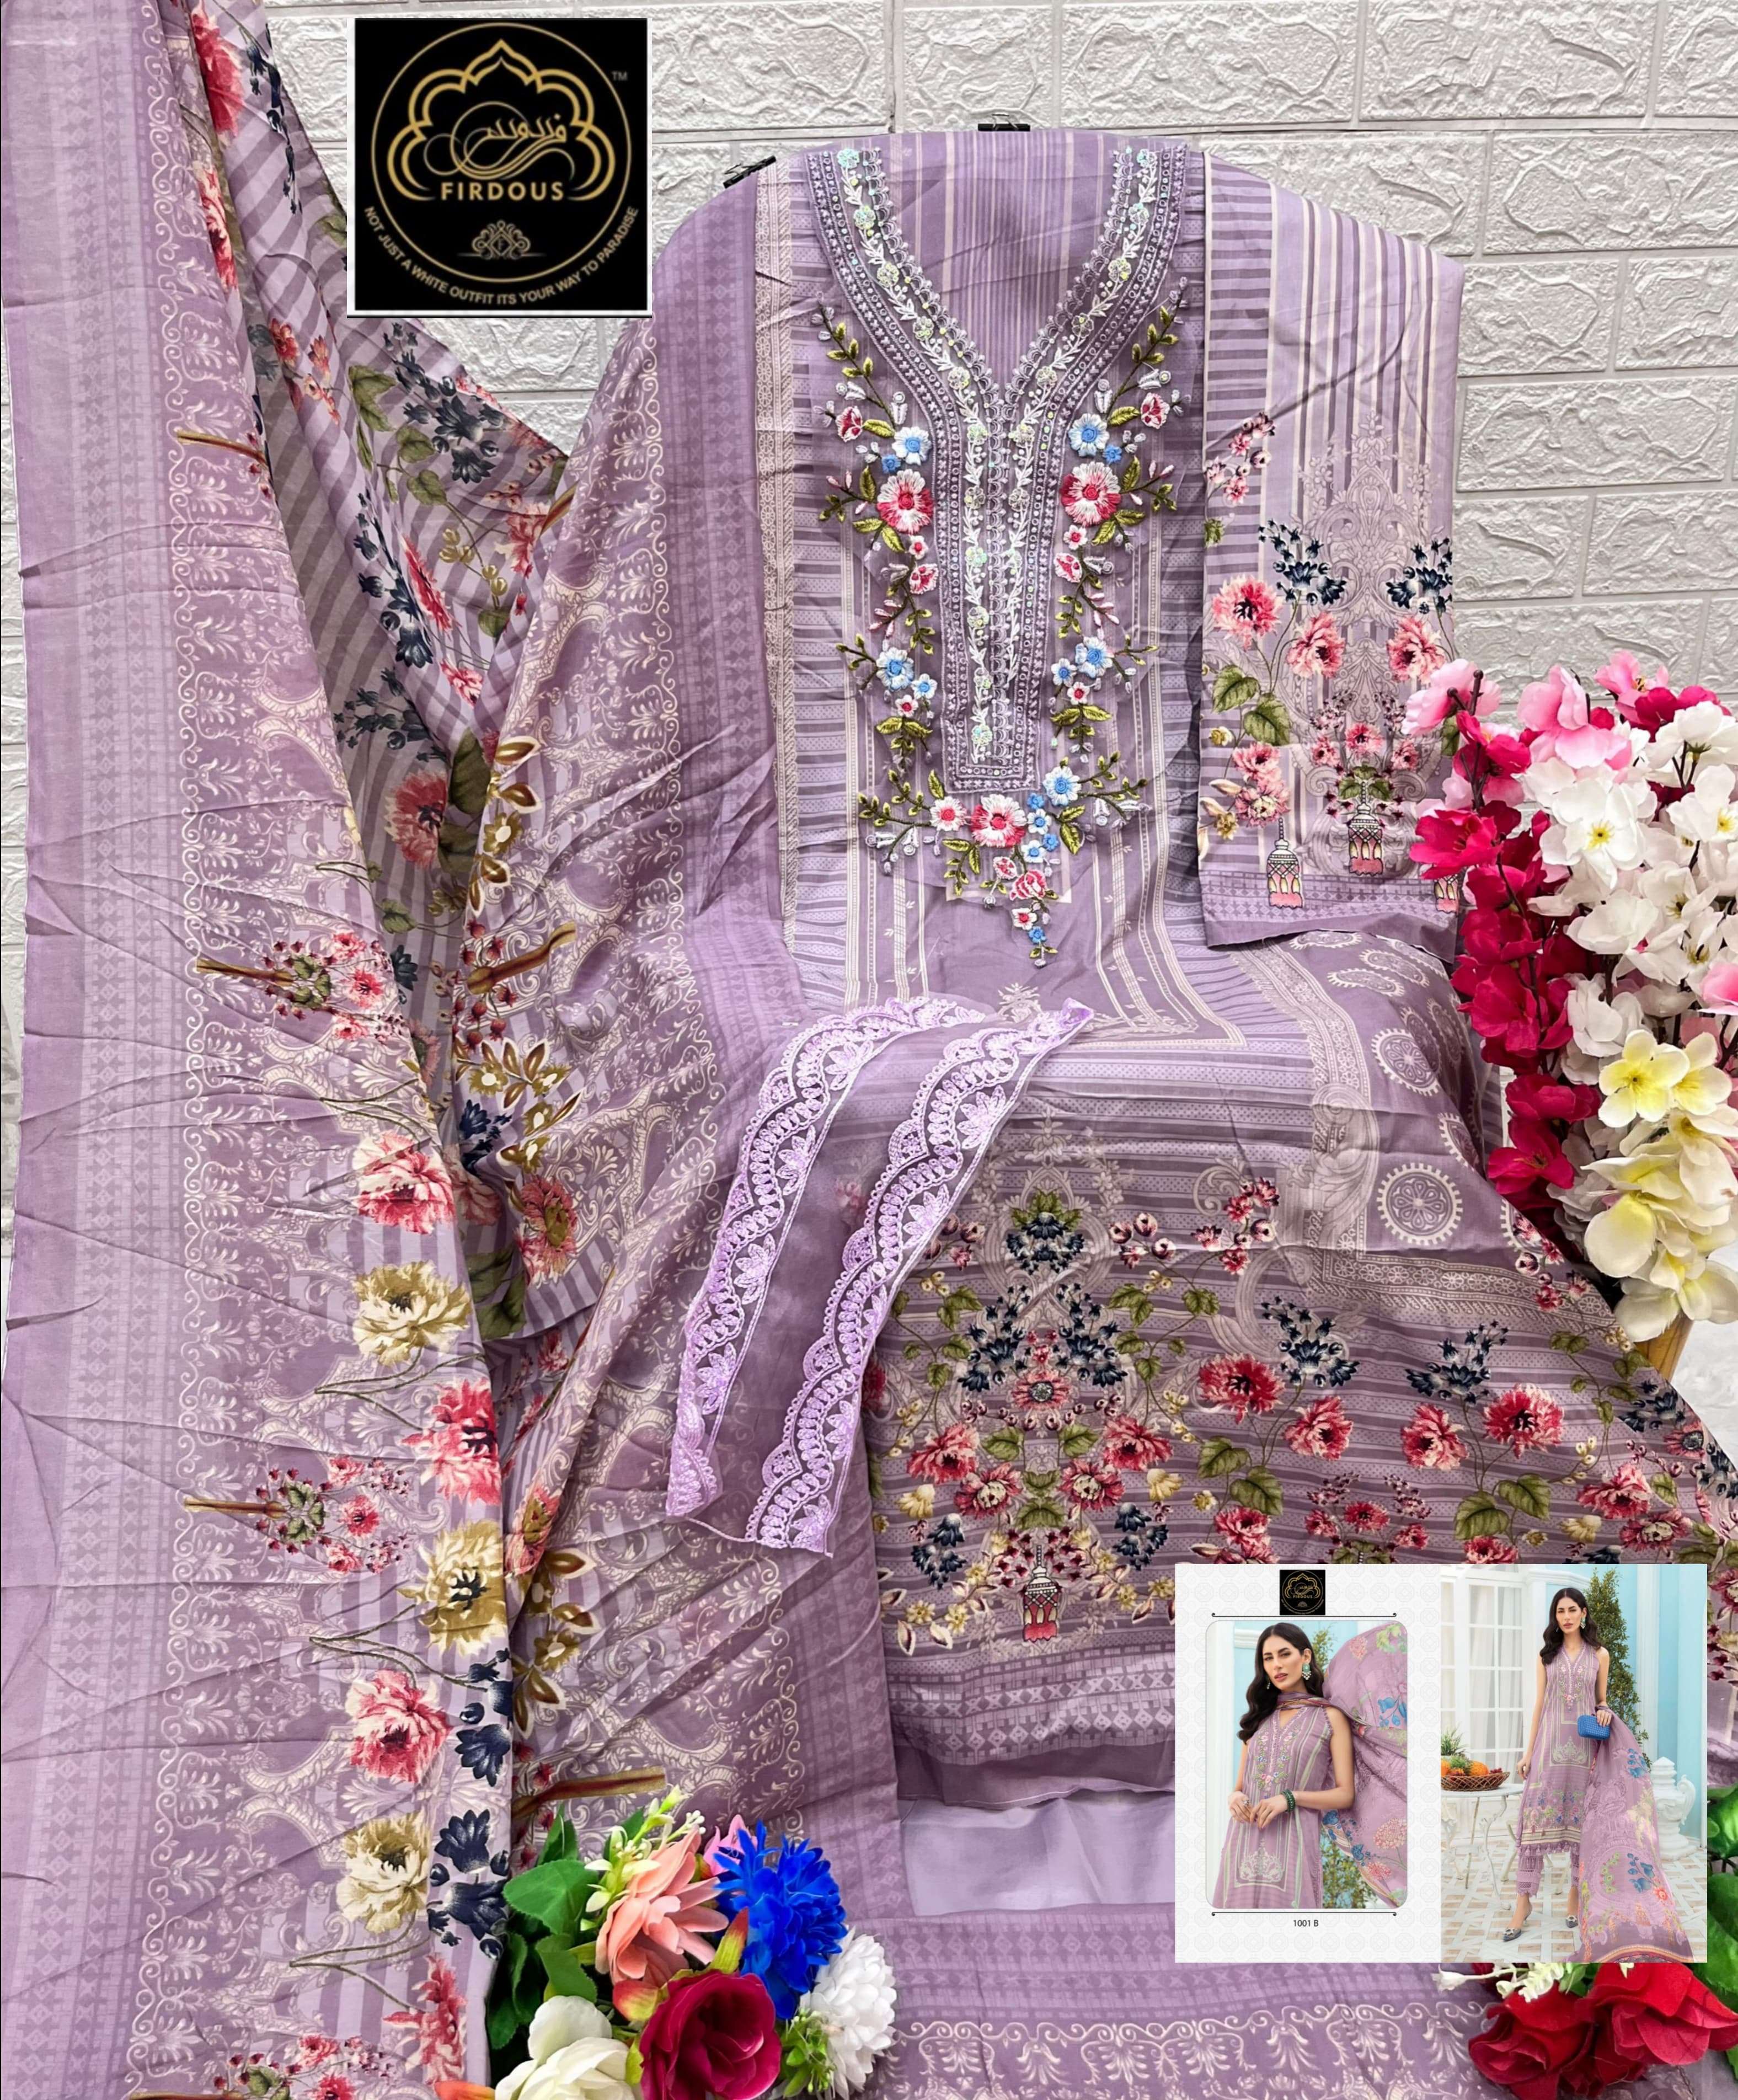 firdous maria b vol-1 1001 colour series latest designer party wear chiffon dupatta pakistani salwar suit with cotton dupatta wholesale price surat